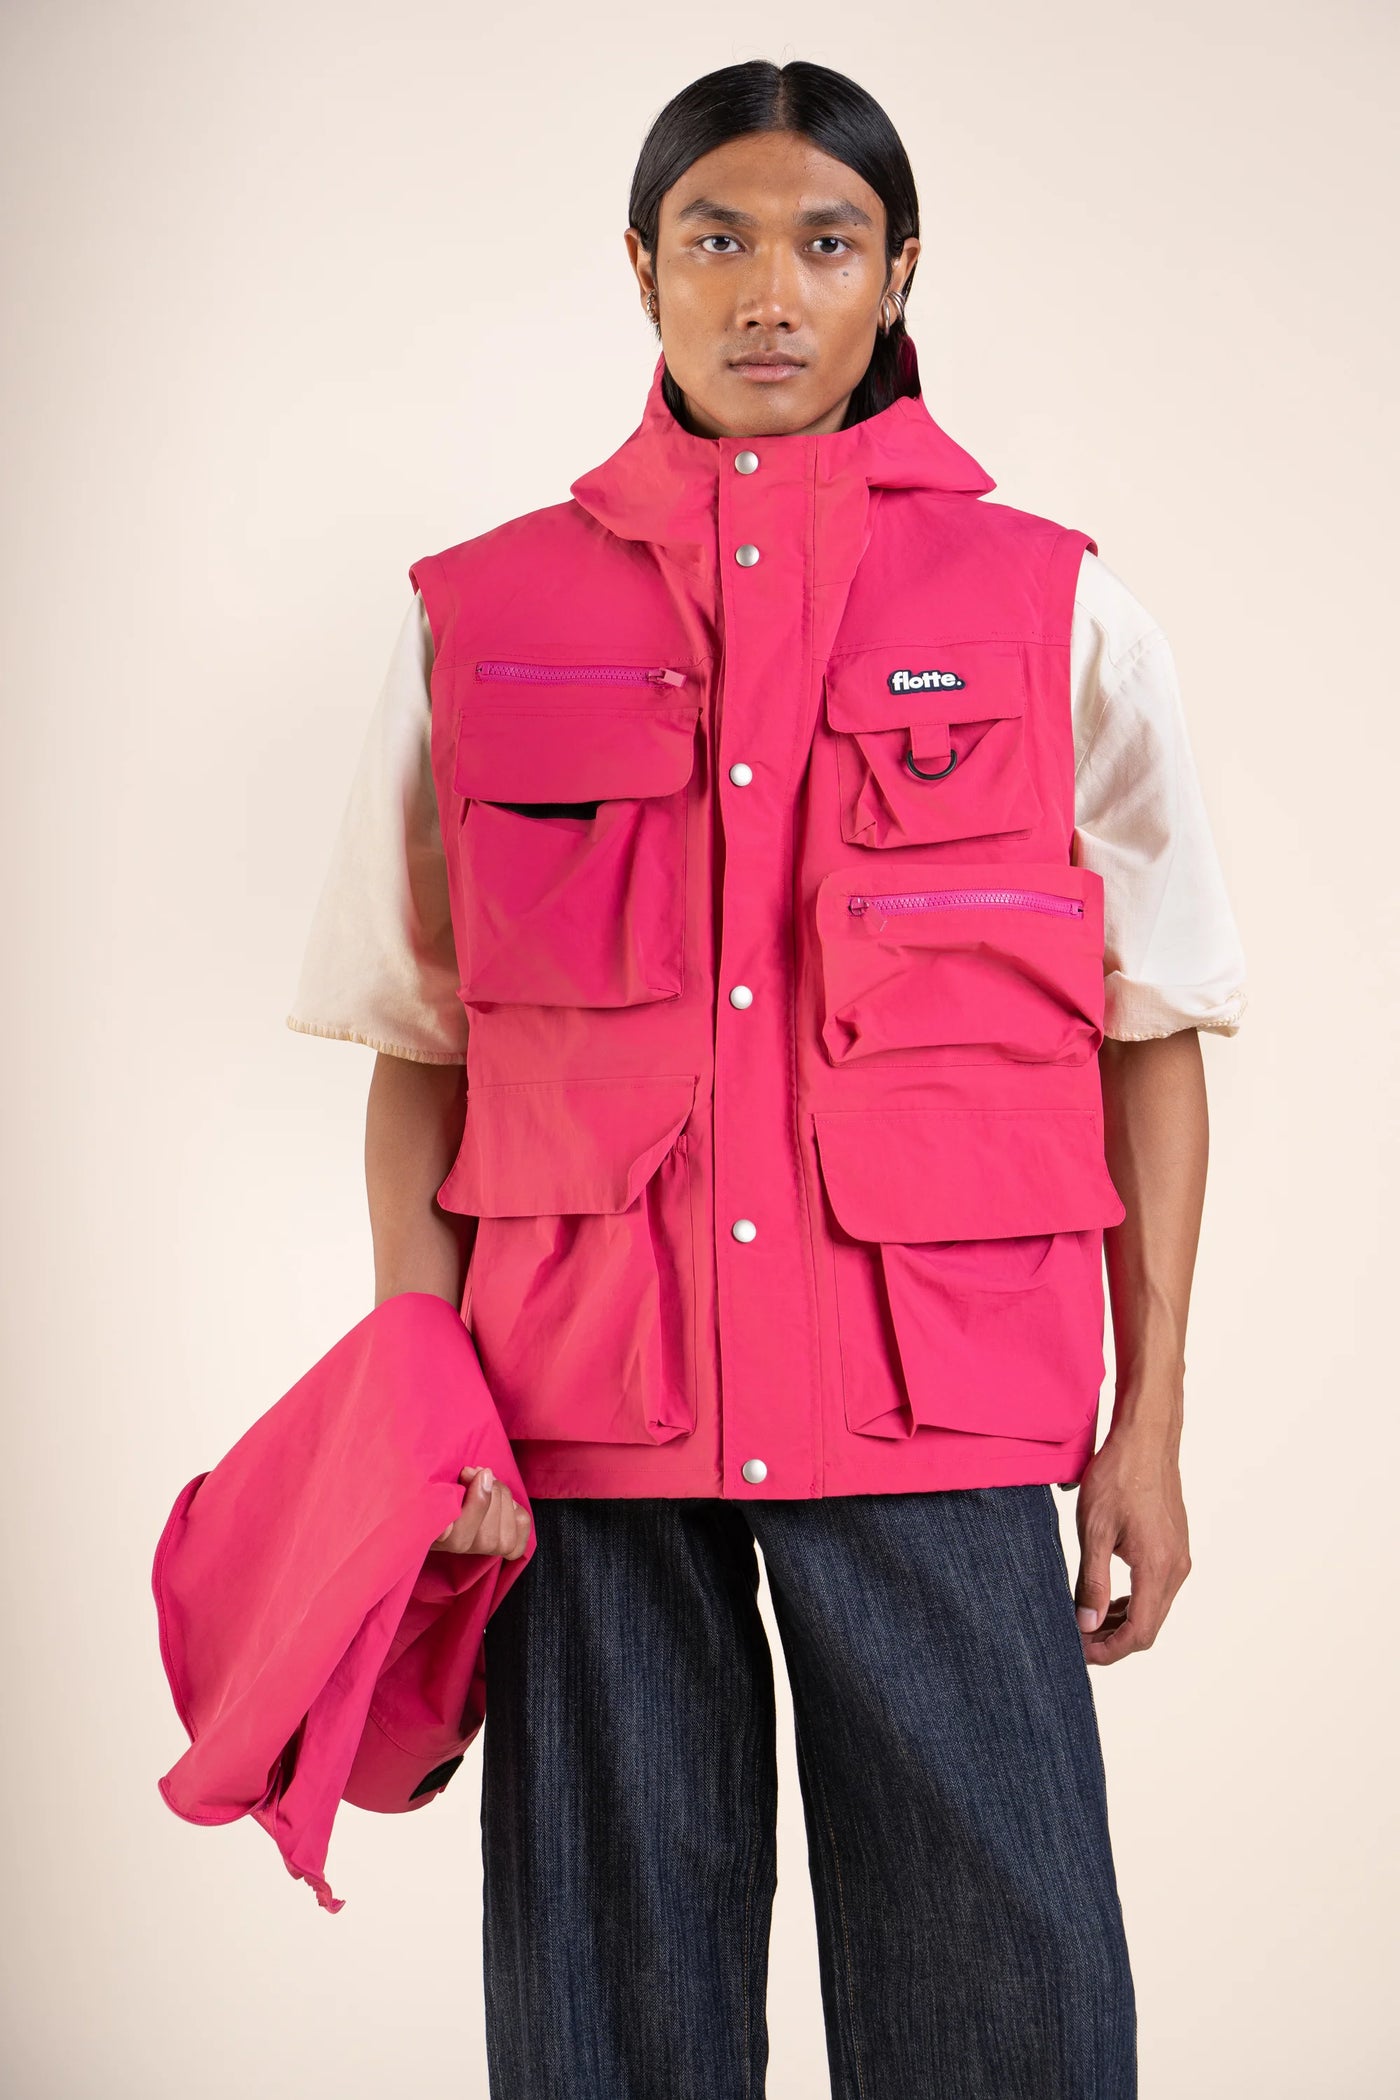 Saint Cyr - multipocket jacket - Flotte #couleur_fuschia